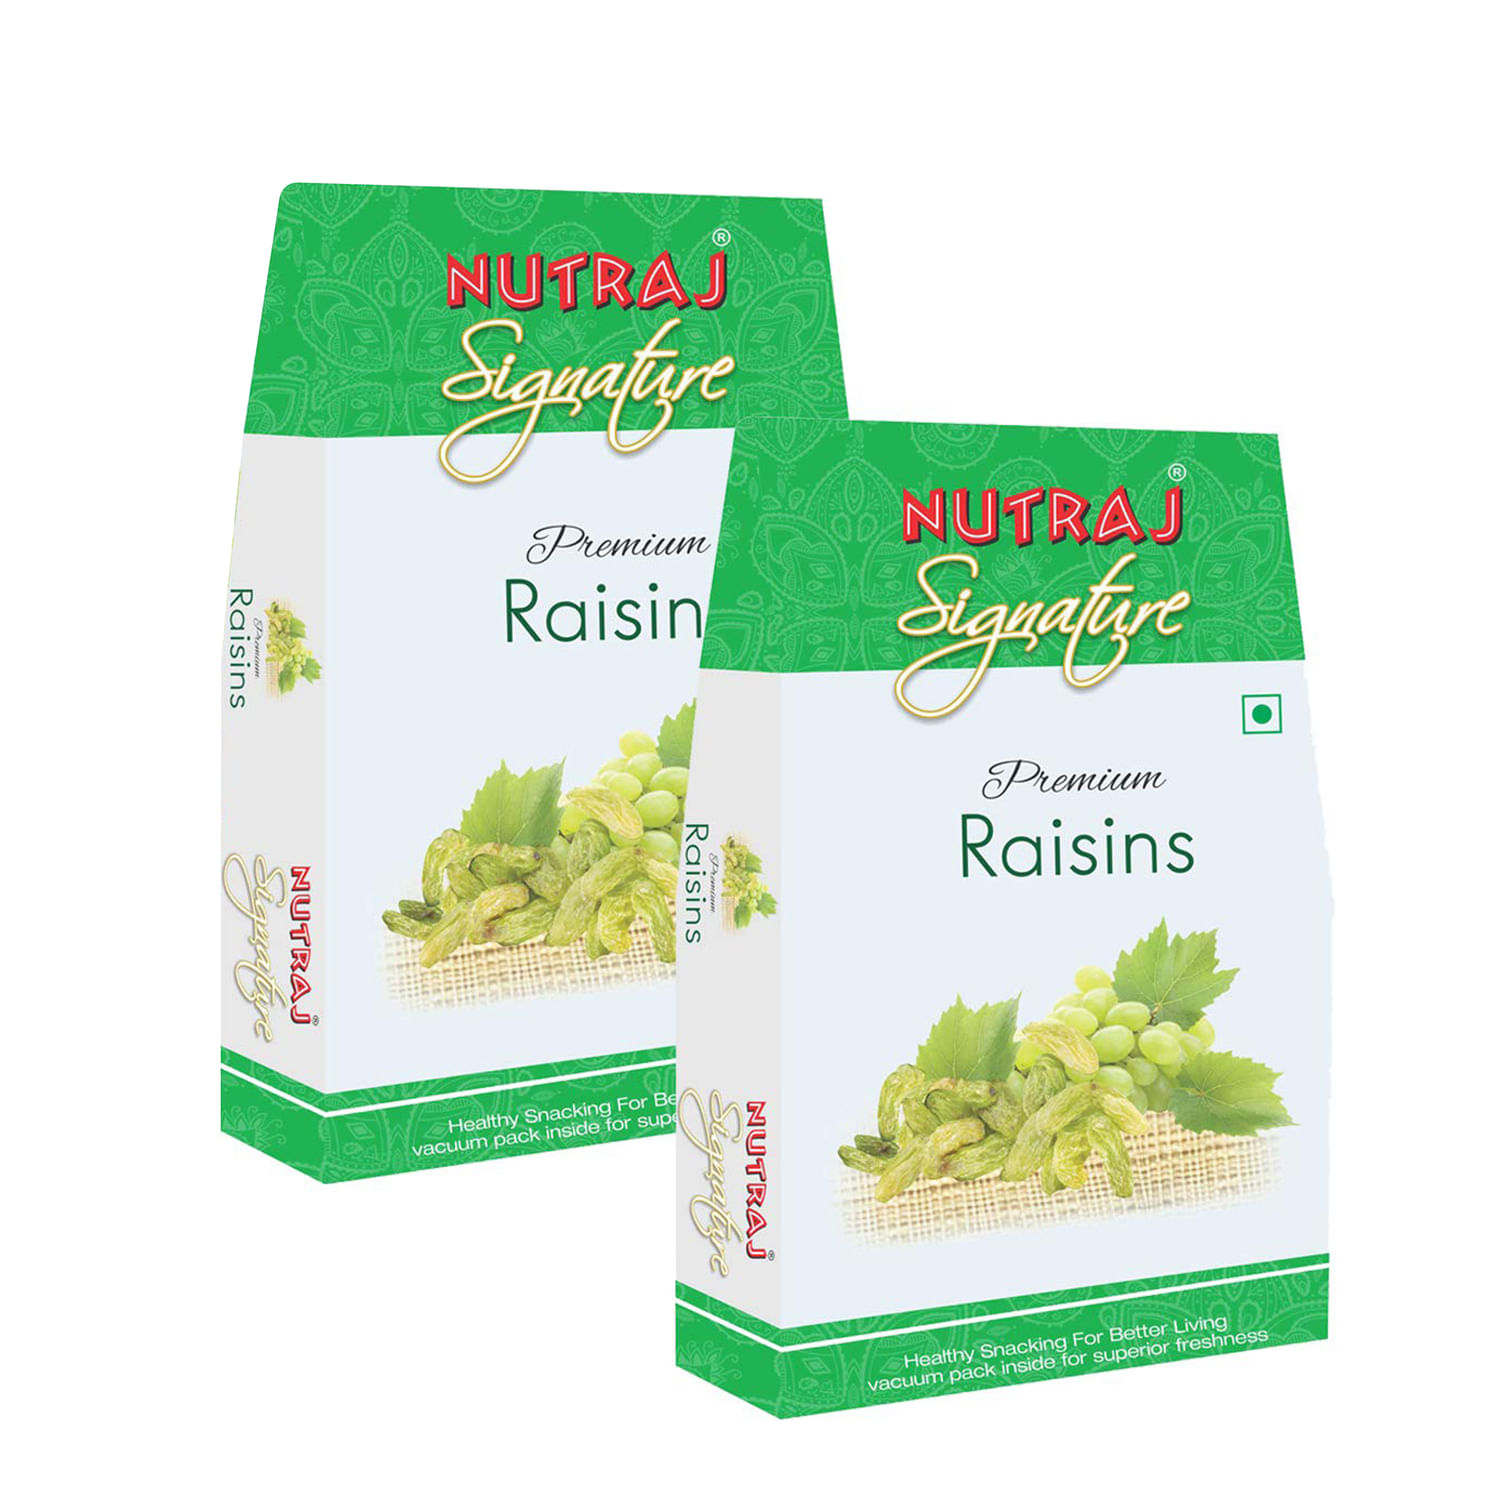 Nutraj Signature Premium Raisins 400g (2 X 200g) - Vacuum Pack